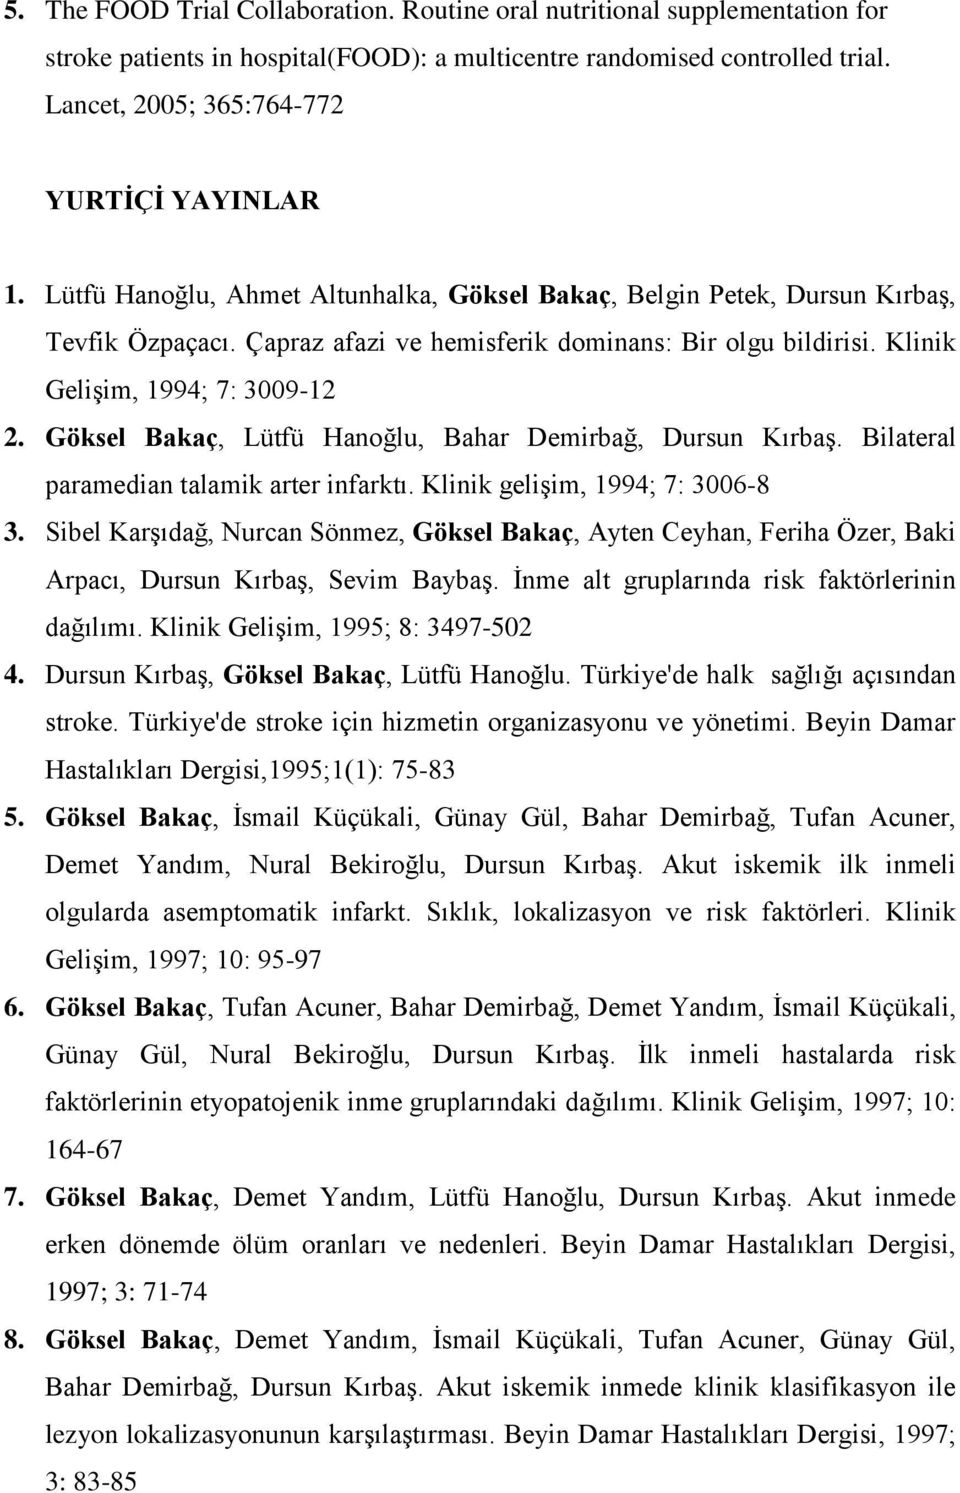 Klinik Gelişim, 1994; 7: 3009-12 2. Göksel Bakaç, Lütfü Hanoğlu, Bahar Demirbağ, Dursun Kırbaş. Bilateral paramedian talamik arter infarktı. Klinik gelişim, 1994; 7: 3006-8 3.